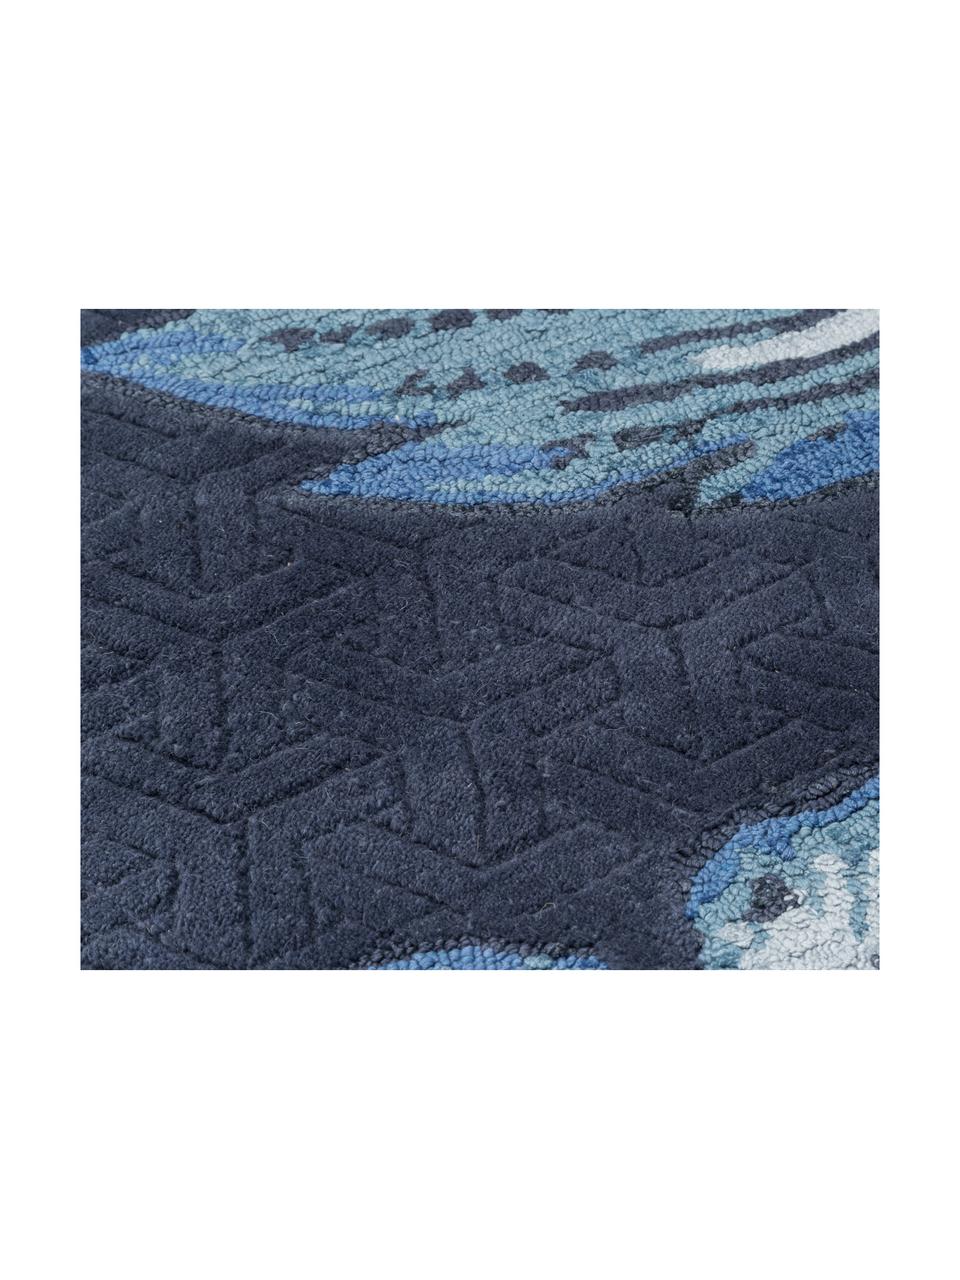 Handgetufte wollen vloerkleed Fabled, Bovenzijde: 60% wol, 40% viscose, Onderzijde: katoen met latex bekleed, Blauwtinten, 120 x 180 cm